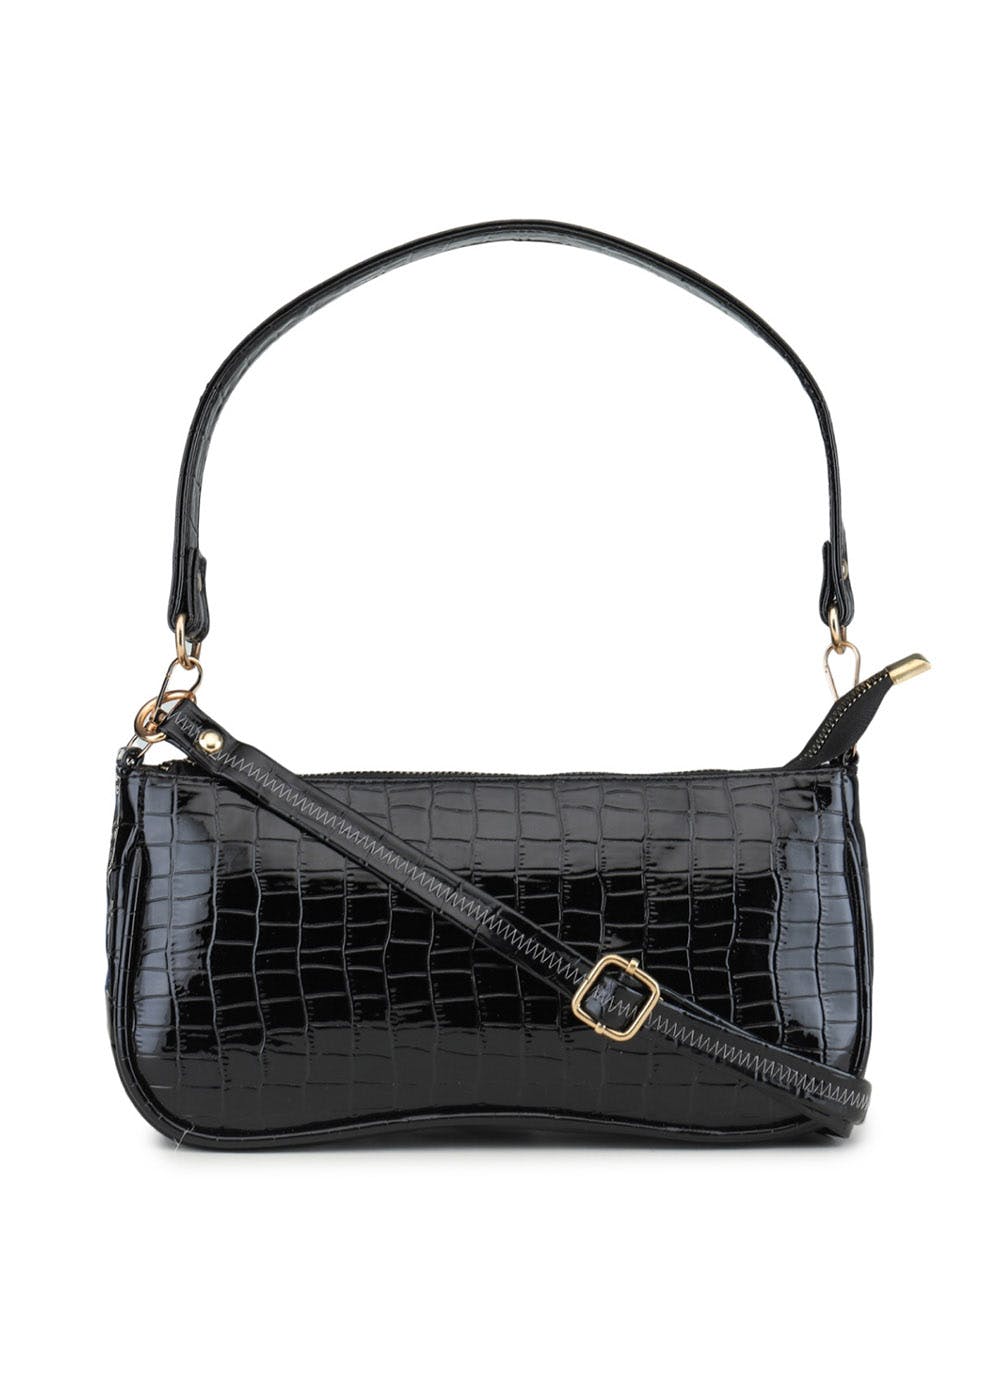 Get Black Polyester Sling bag at ₹ 799 | LBB Shop